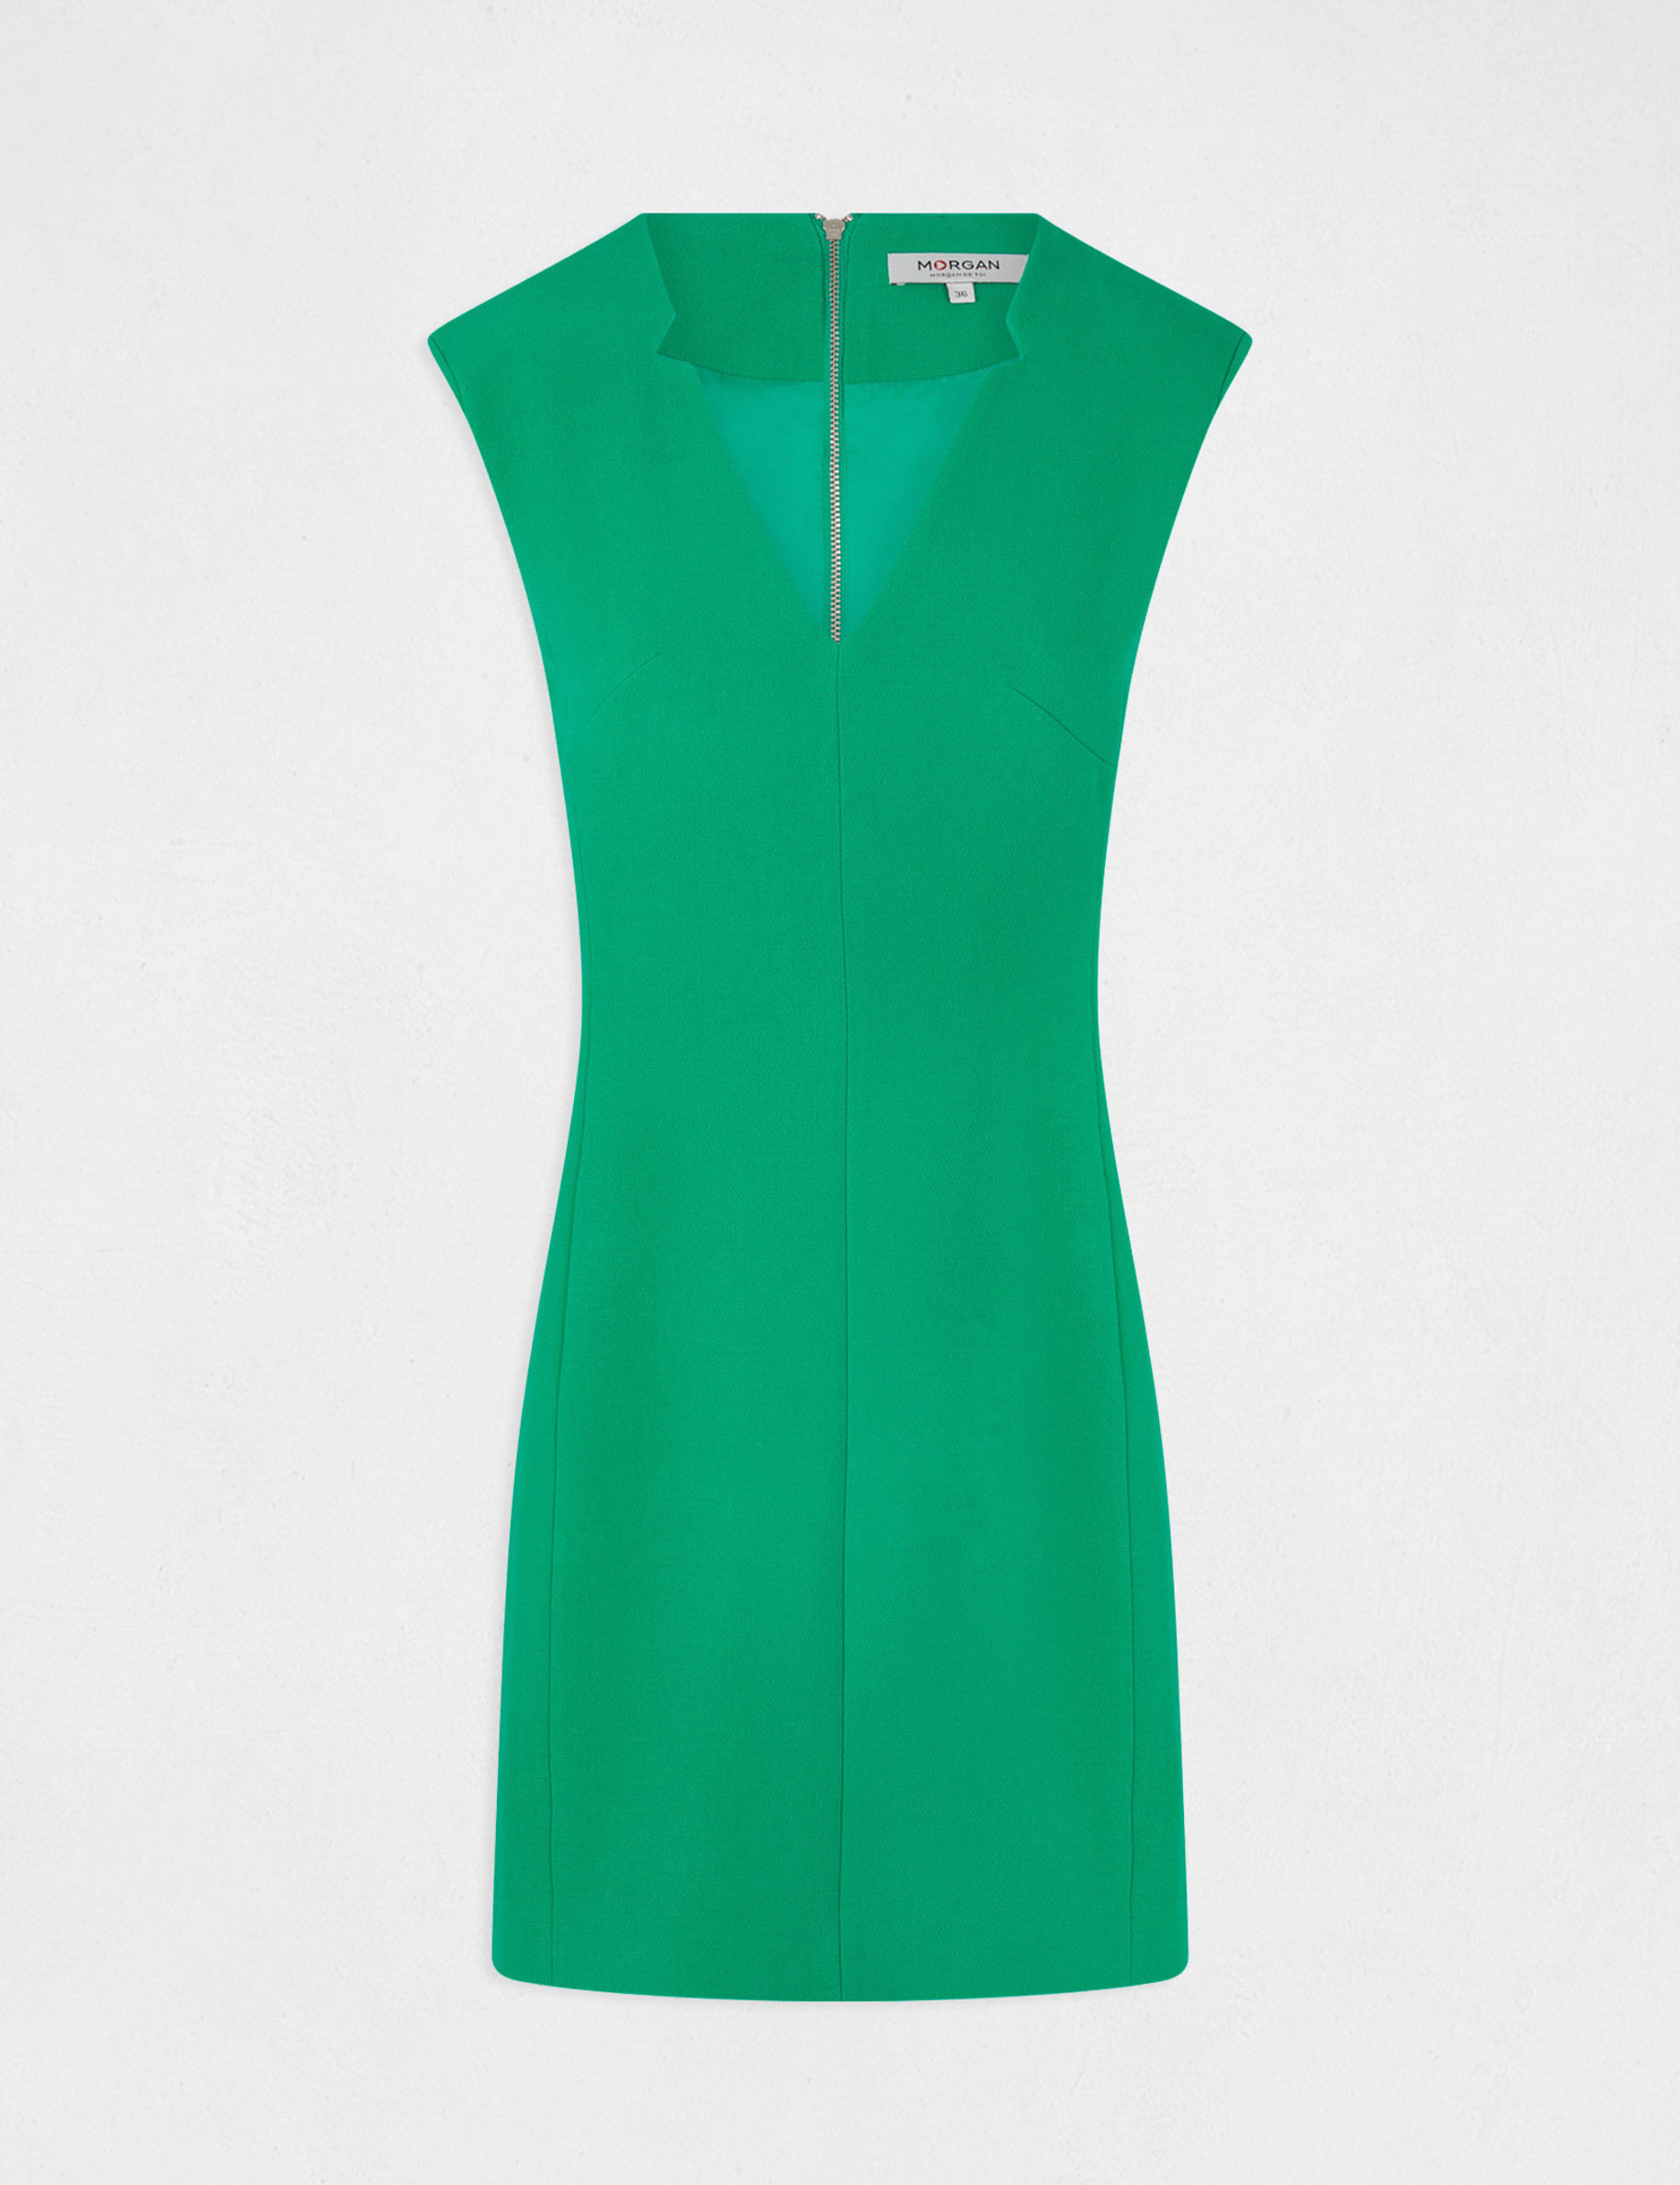 Mouwloze getailleerde jurk met V-hals medium groen vrouw